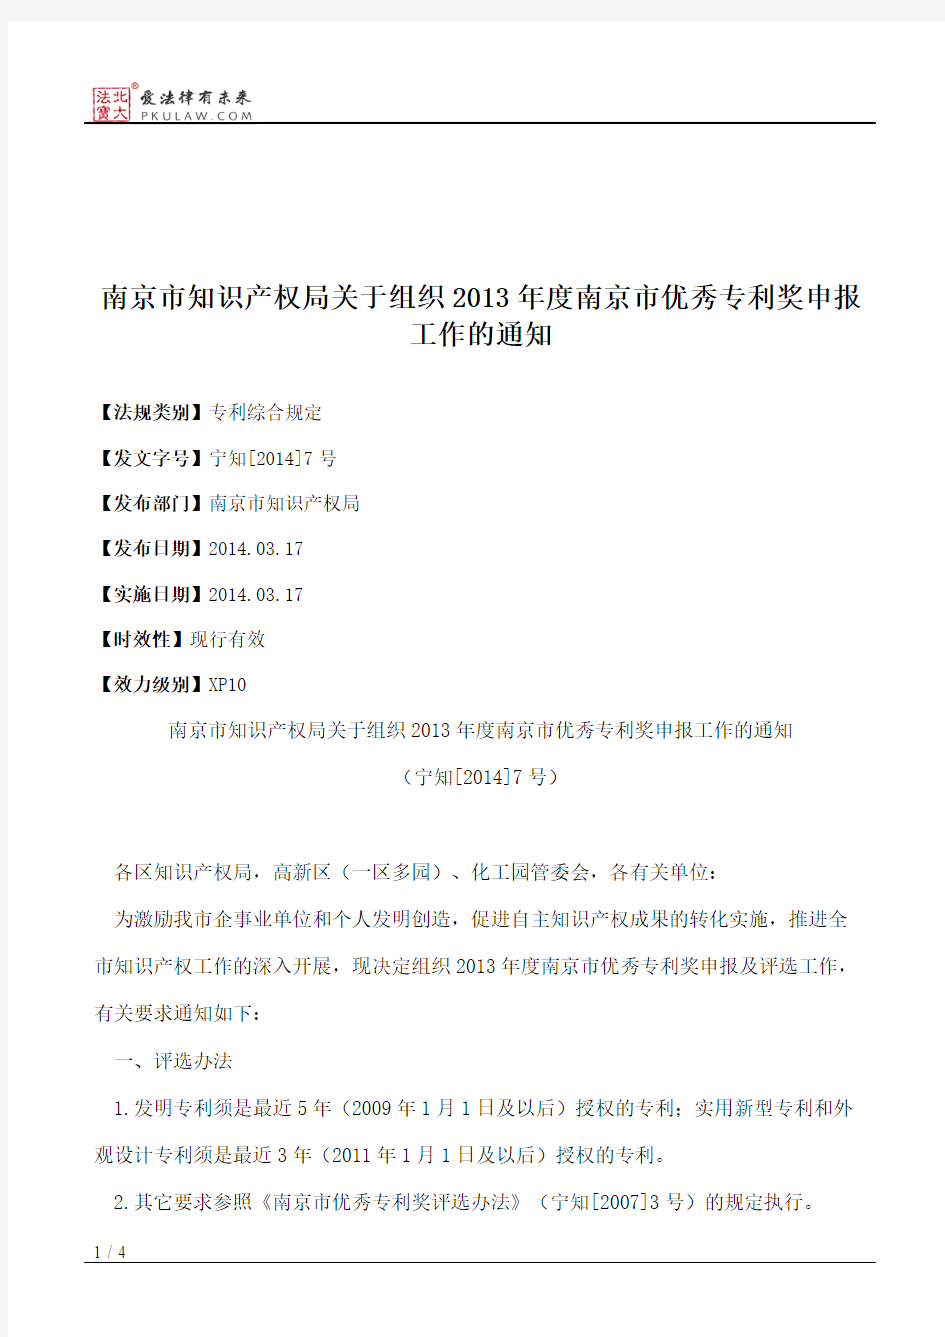 南京市知识产权局关于组织2013年度南京市优秀专利奖申报工作的通知